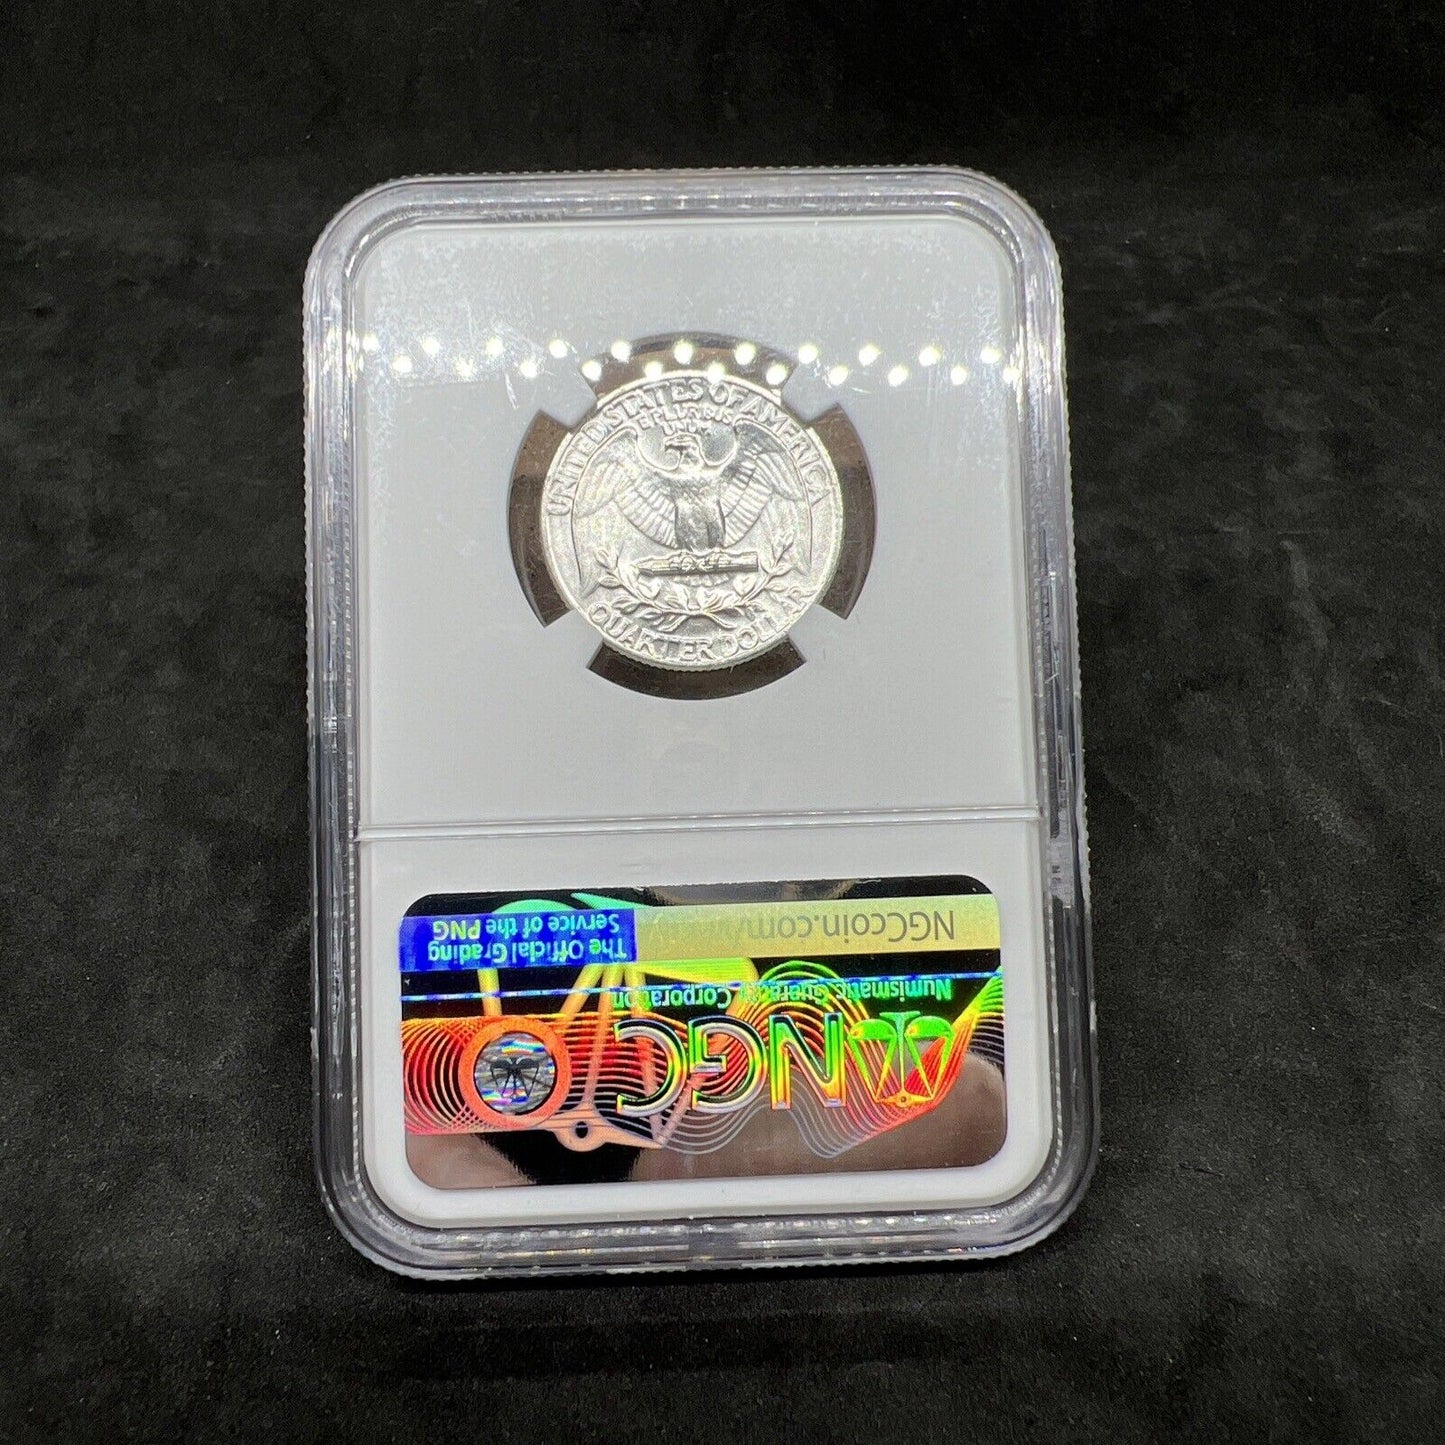 1964 P 25c Washington Silver Quarter Coin NGC MS66 Gem BU Certified